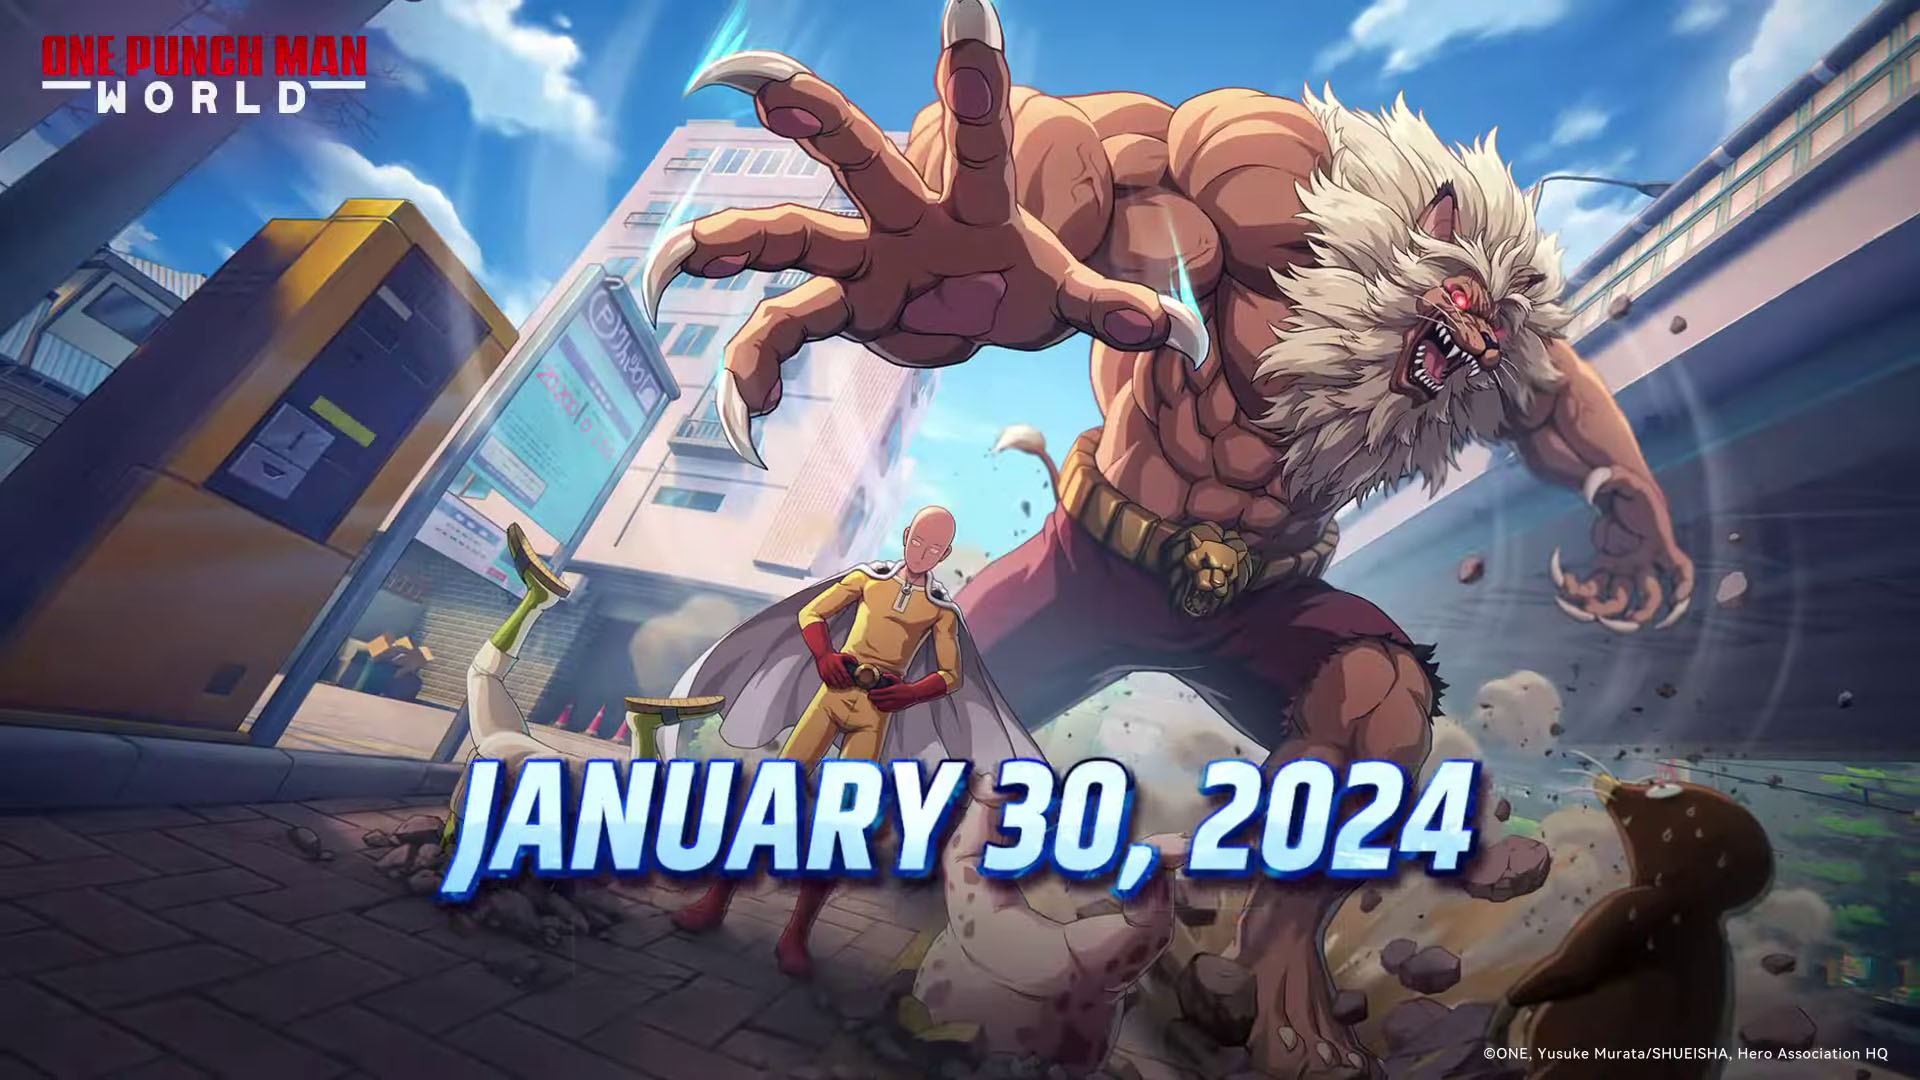 سيتم عرض One Punch Man: The World في 30 يناير 2024